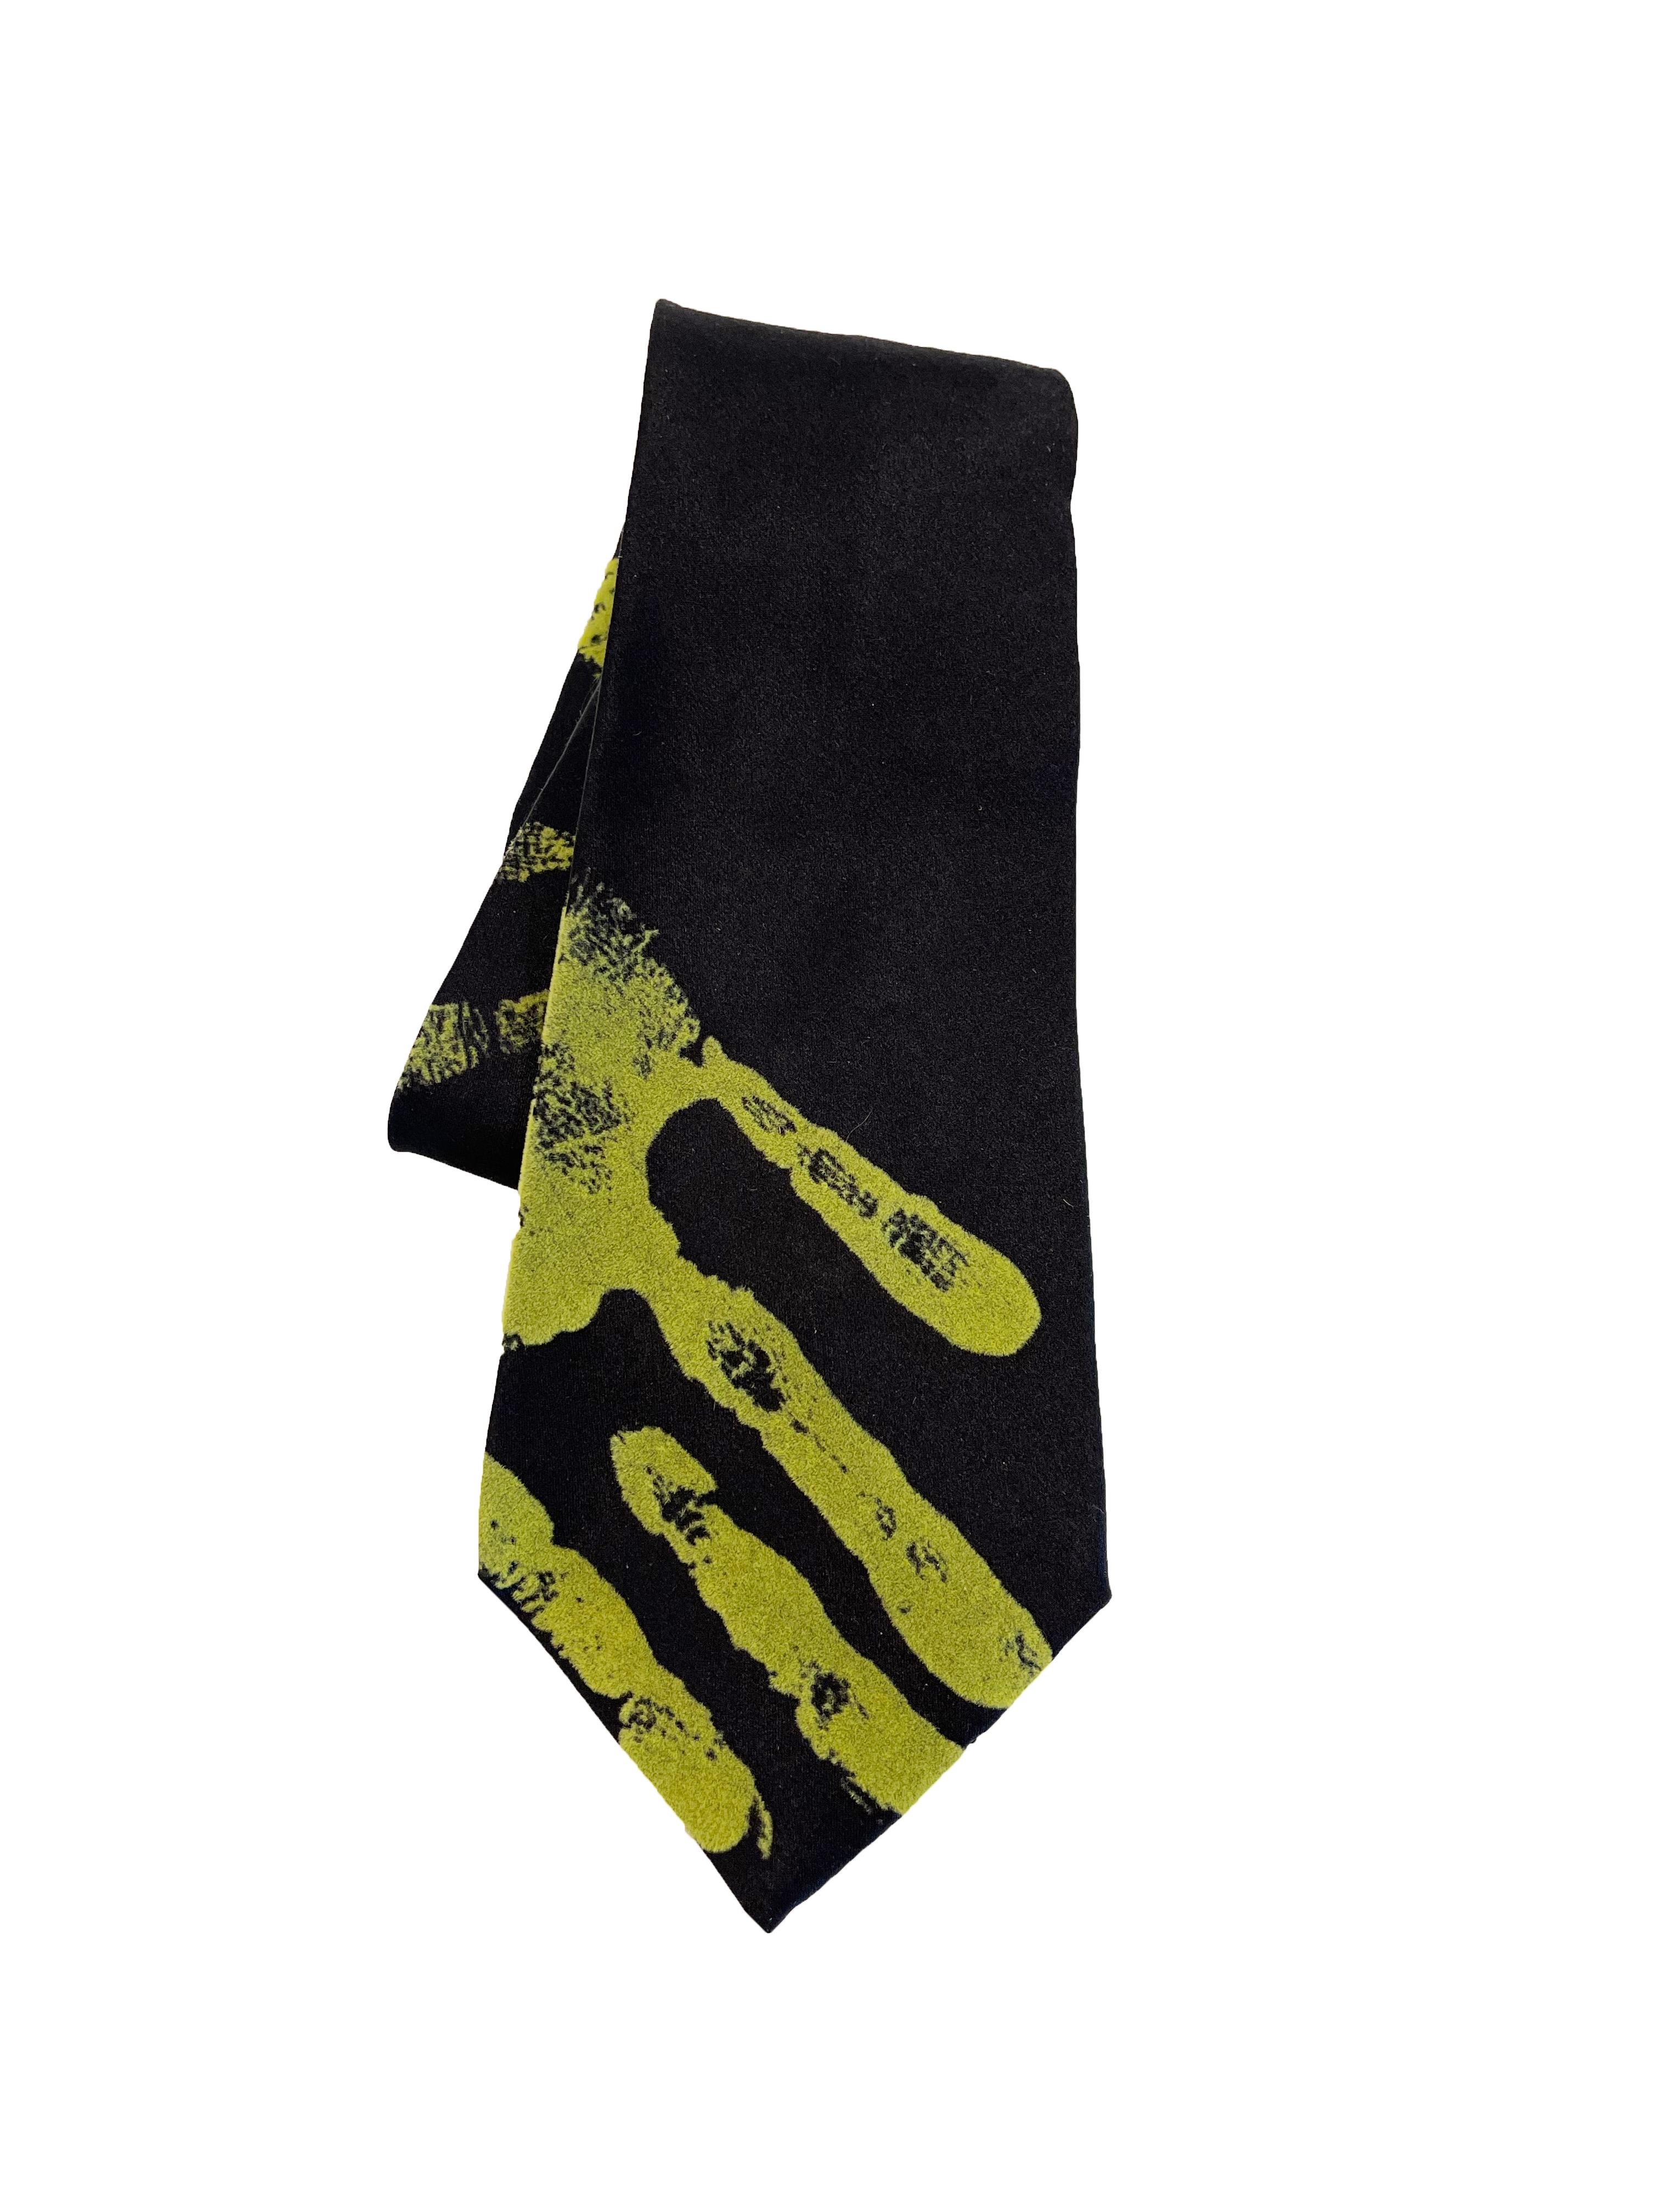 cravate imprimée à la main Jean Paul Gaultier des années 1990 
100% soie 
3.5